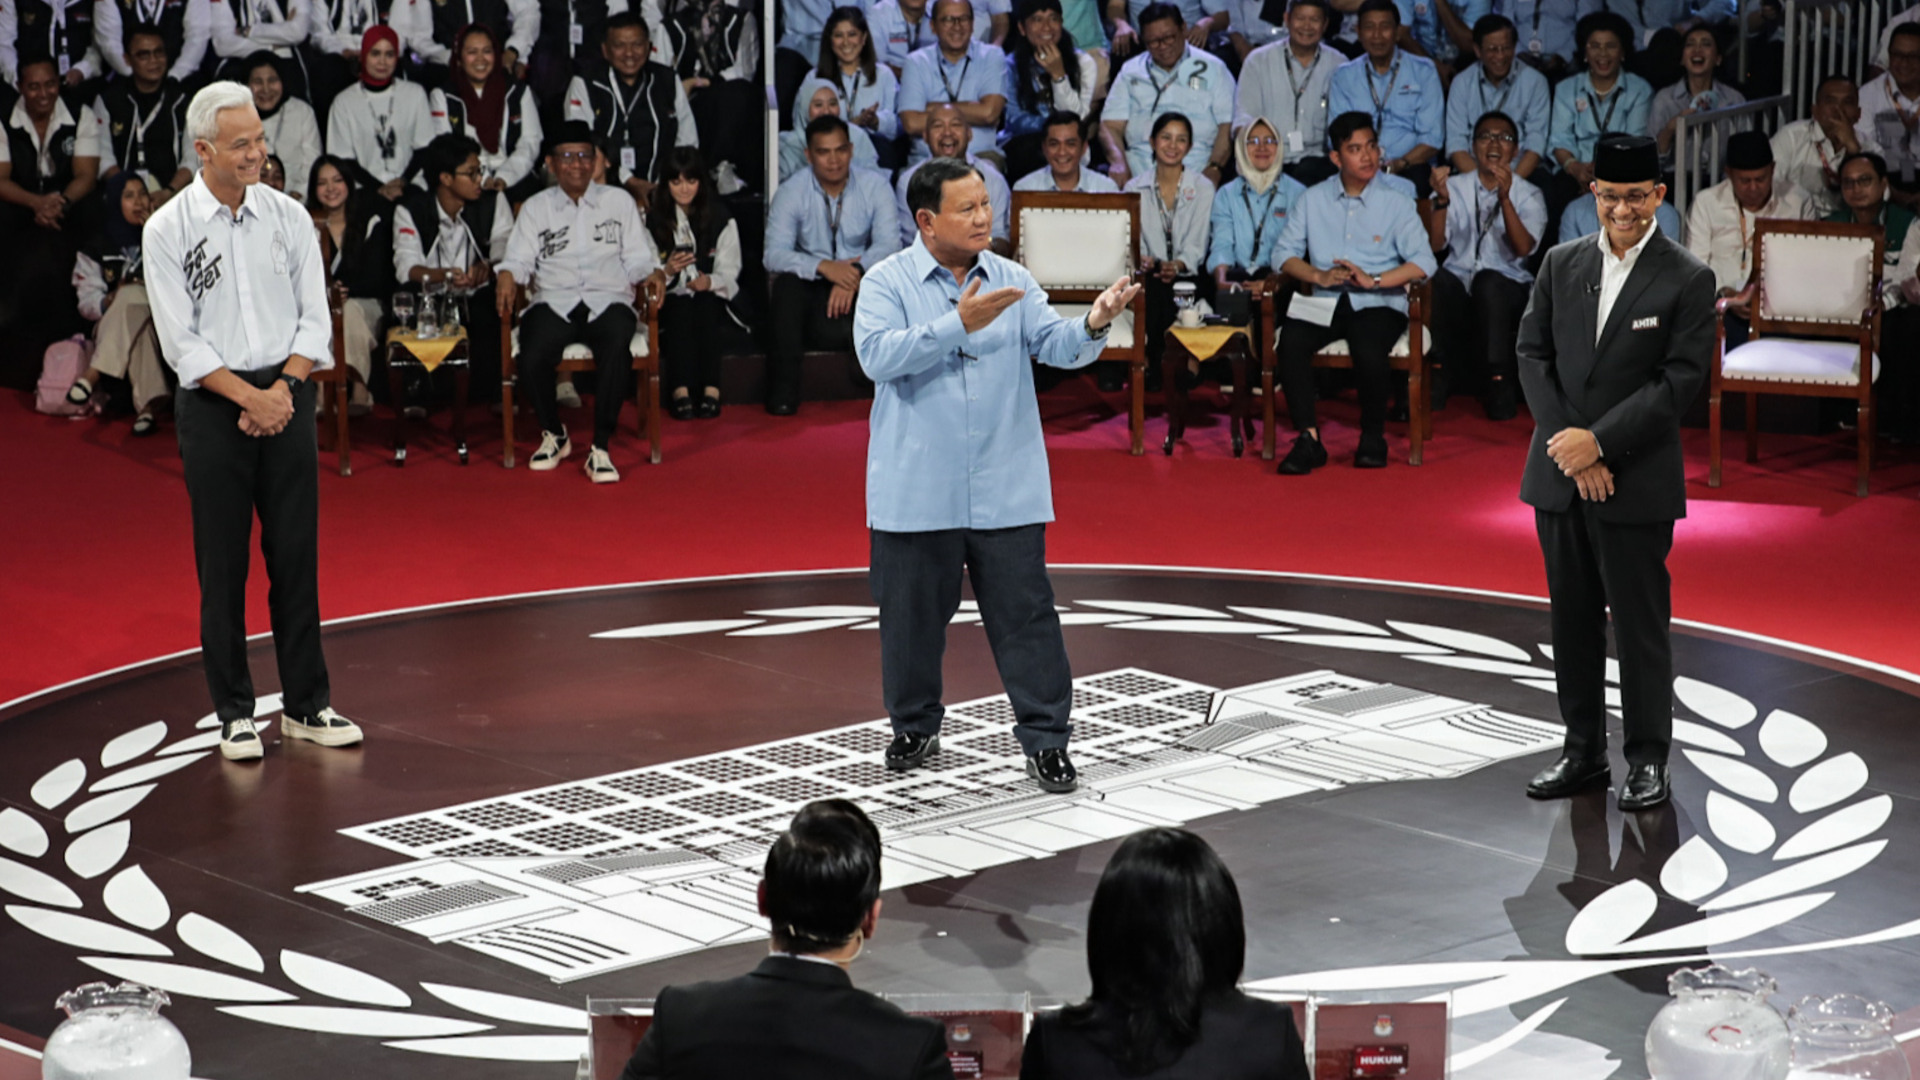  Survei Indikator Politik: Anies Tampil Paling Baik di Debat, Prabowo Unggul Program